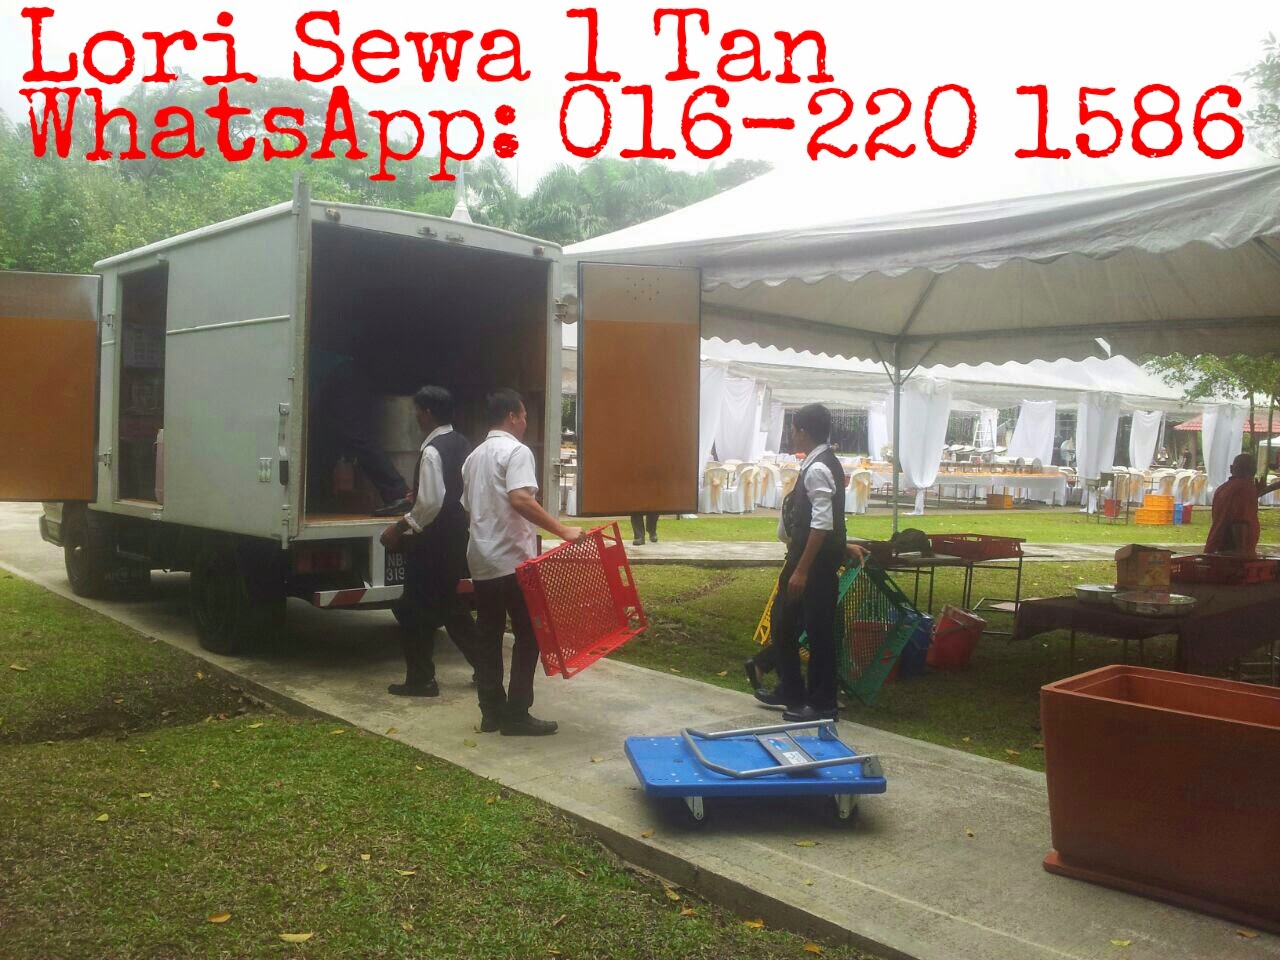 Lori Sewa Murah : Lori Sewa 1 Tan Shah Alam, Selangor 